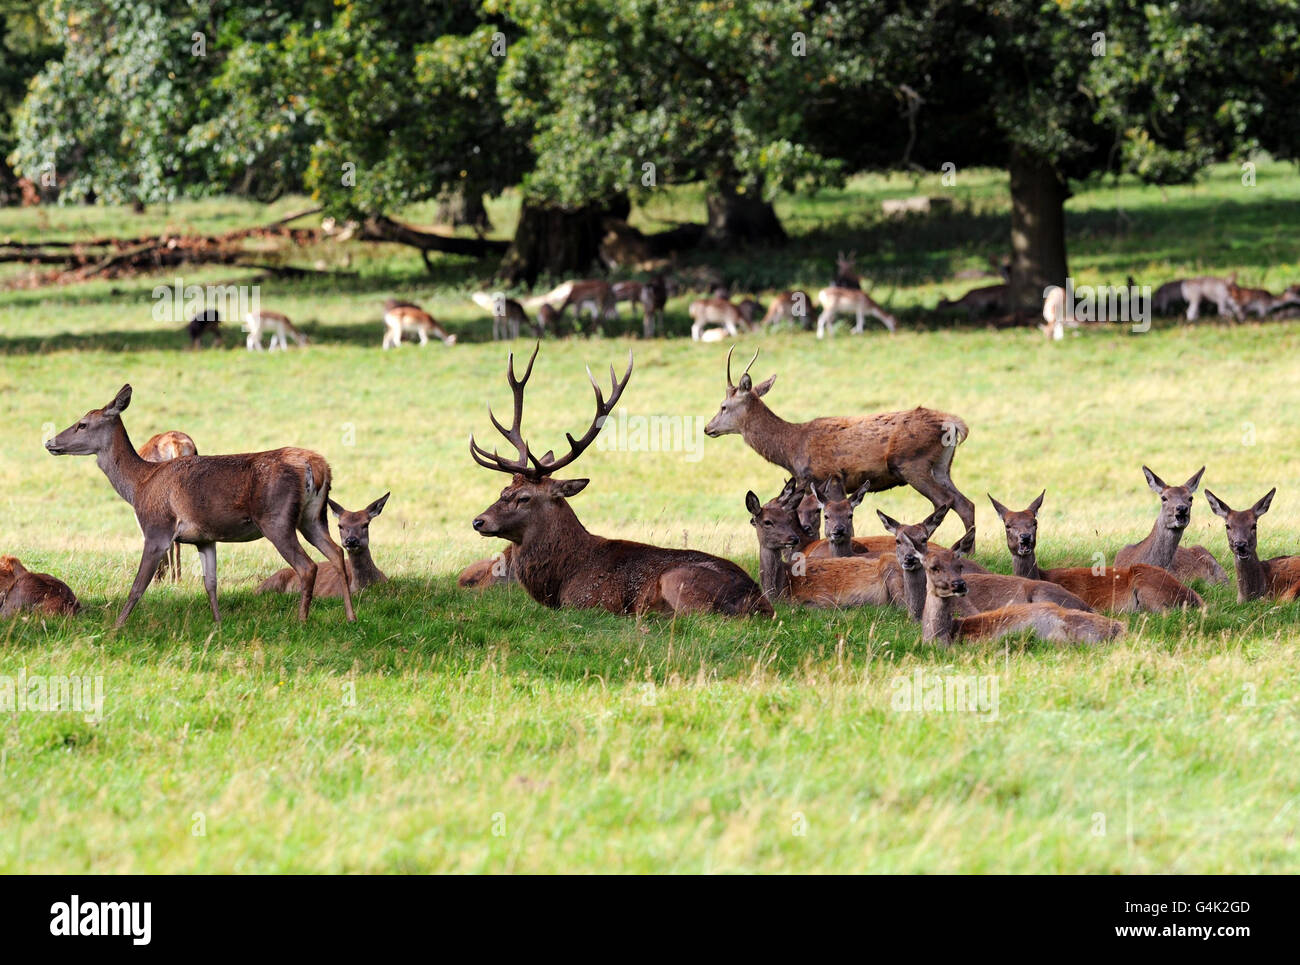 Con la stagione di caccia nei parchi dei cervi in tutto il Regno Unito appena all'inizio, i cervi si uniscono alle mandrie per stagliare il loro territorio nel parco di Studley Royal vicino Ripon, Yorkshire. Foto Stock